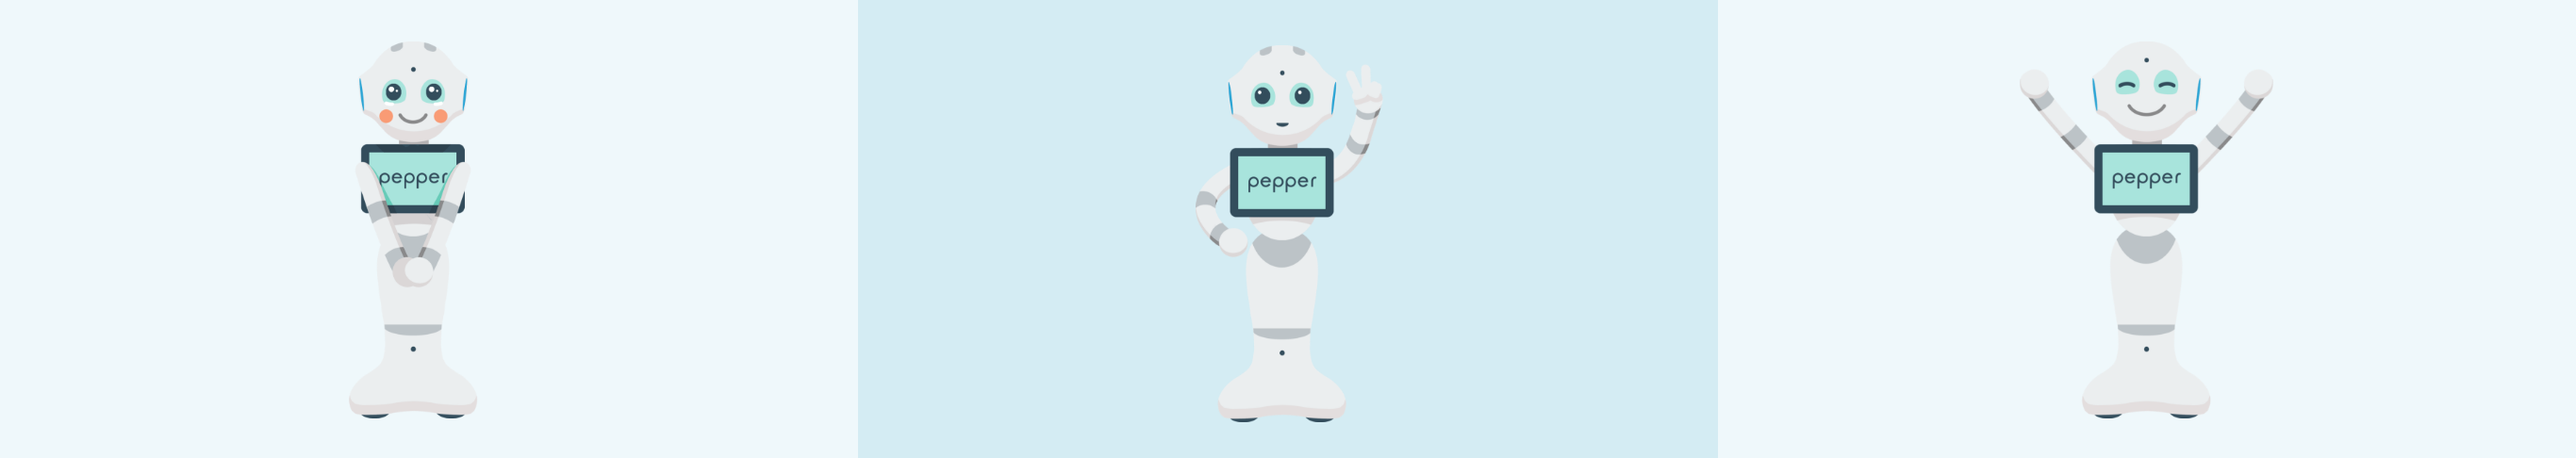 Pepper ペッパー 公式キャラクターライセンスご活用について ソフトバンクロボティクス